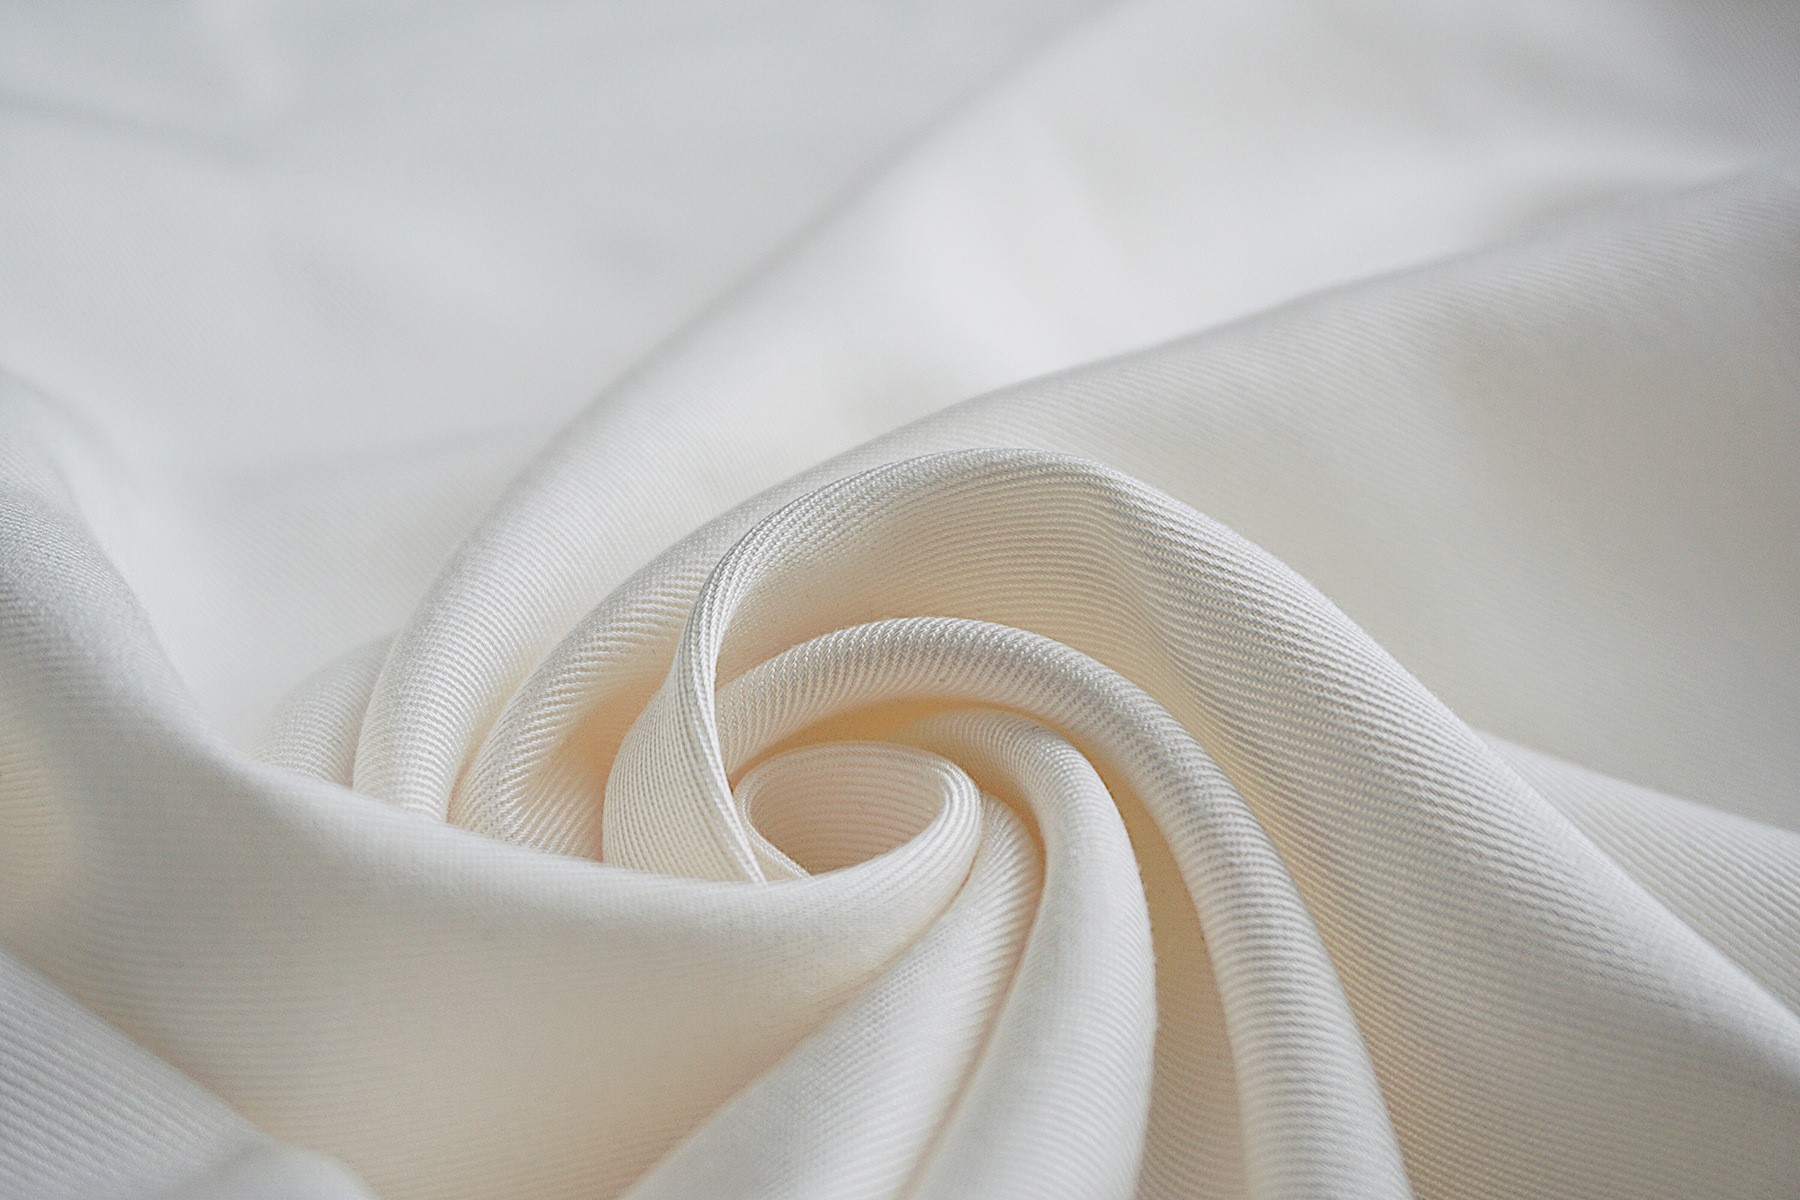 ¿Qué telas se usan más comúnmente para hacer ropa?